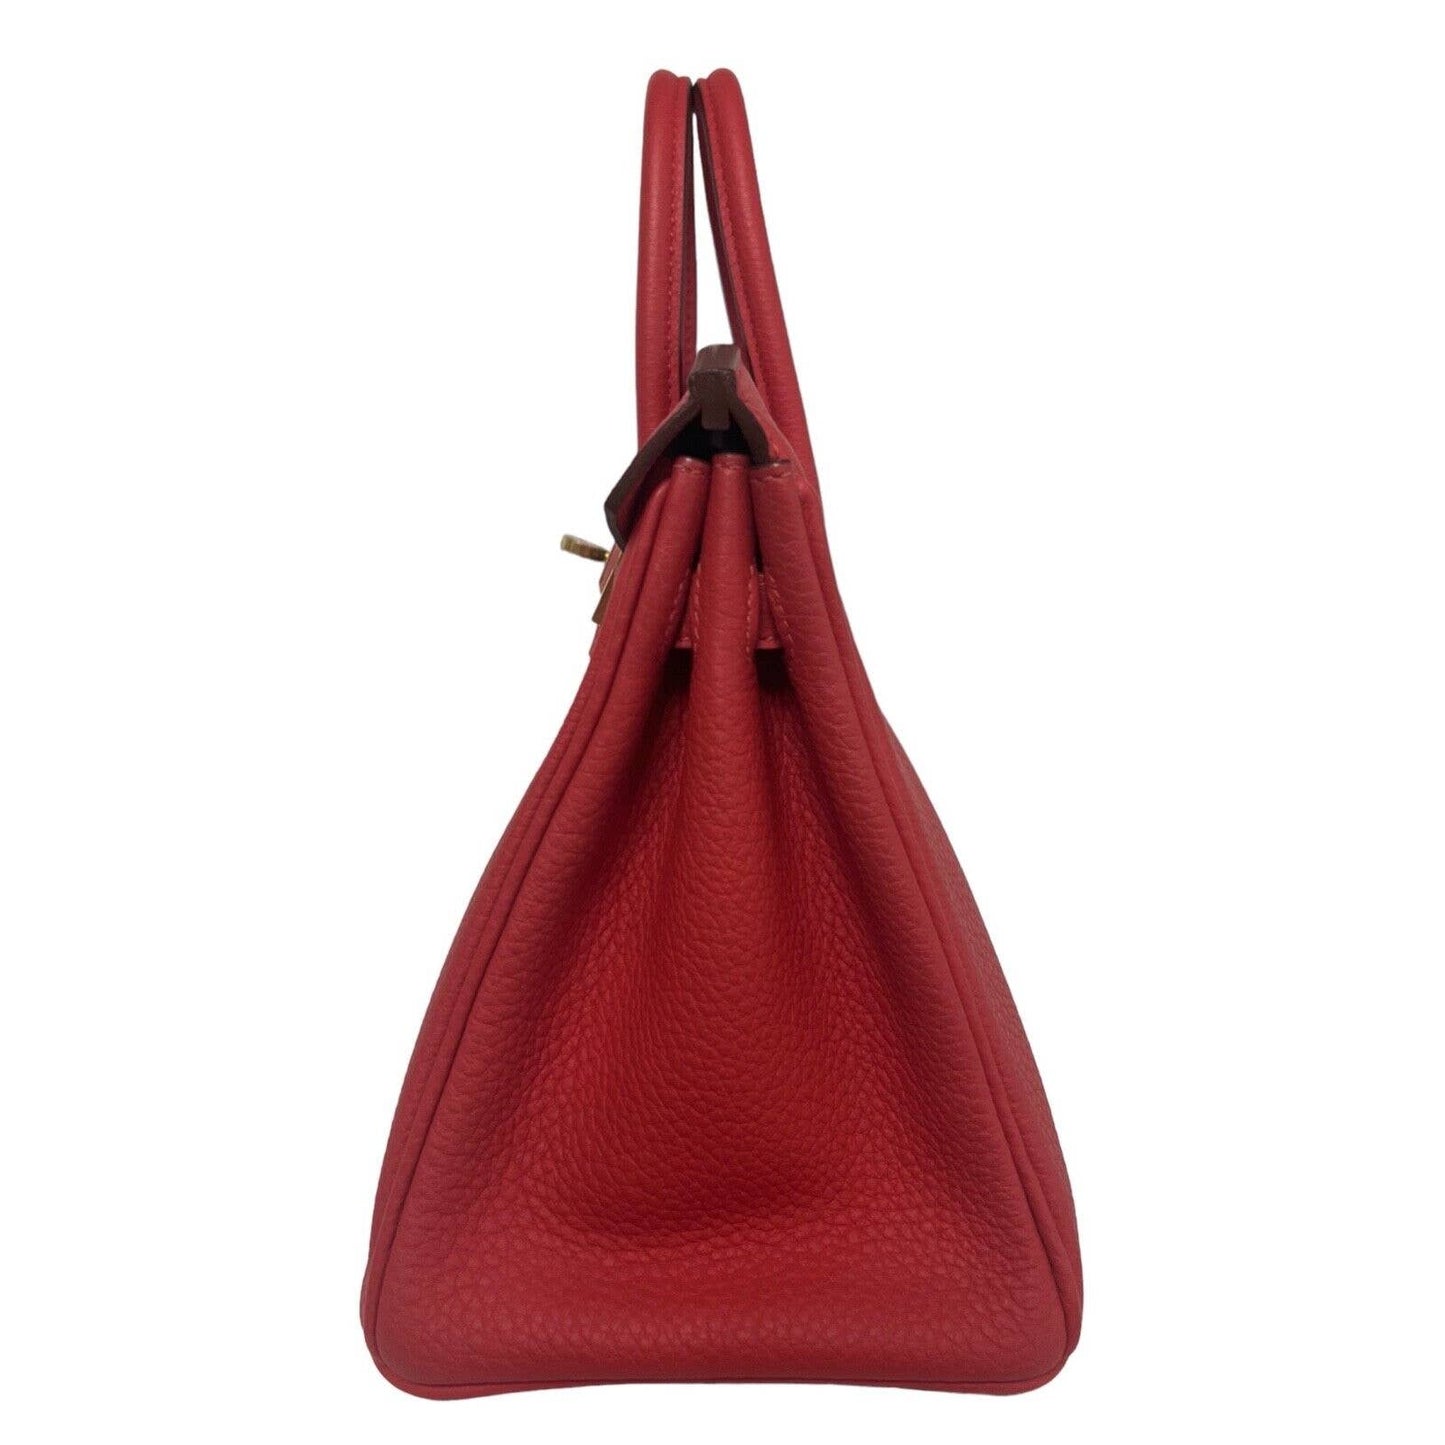 Hermes Birkin 25 Bougainvillea Red Pink Togo Leather Gold Hardware Handbag Bag